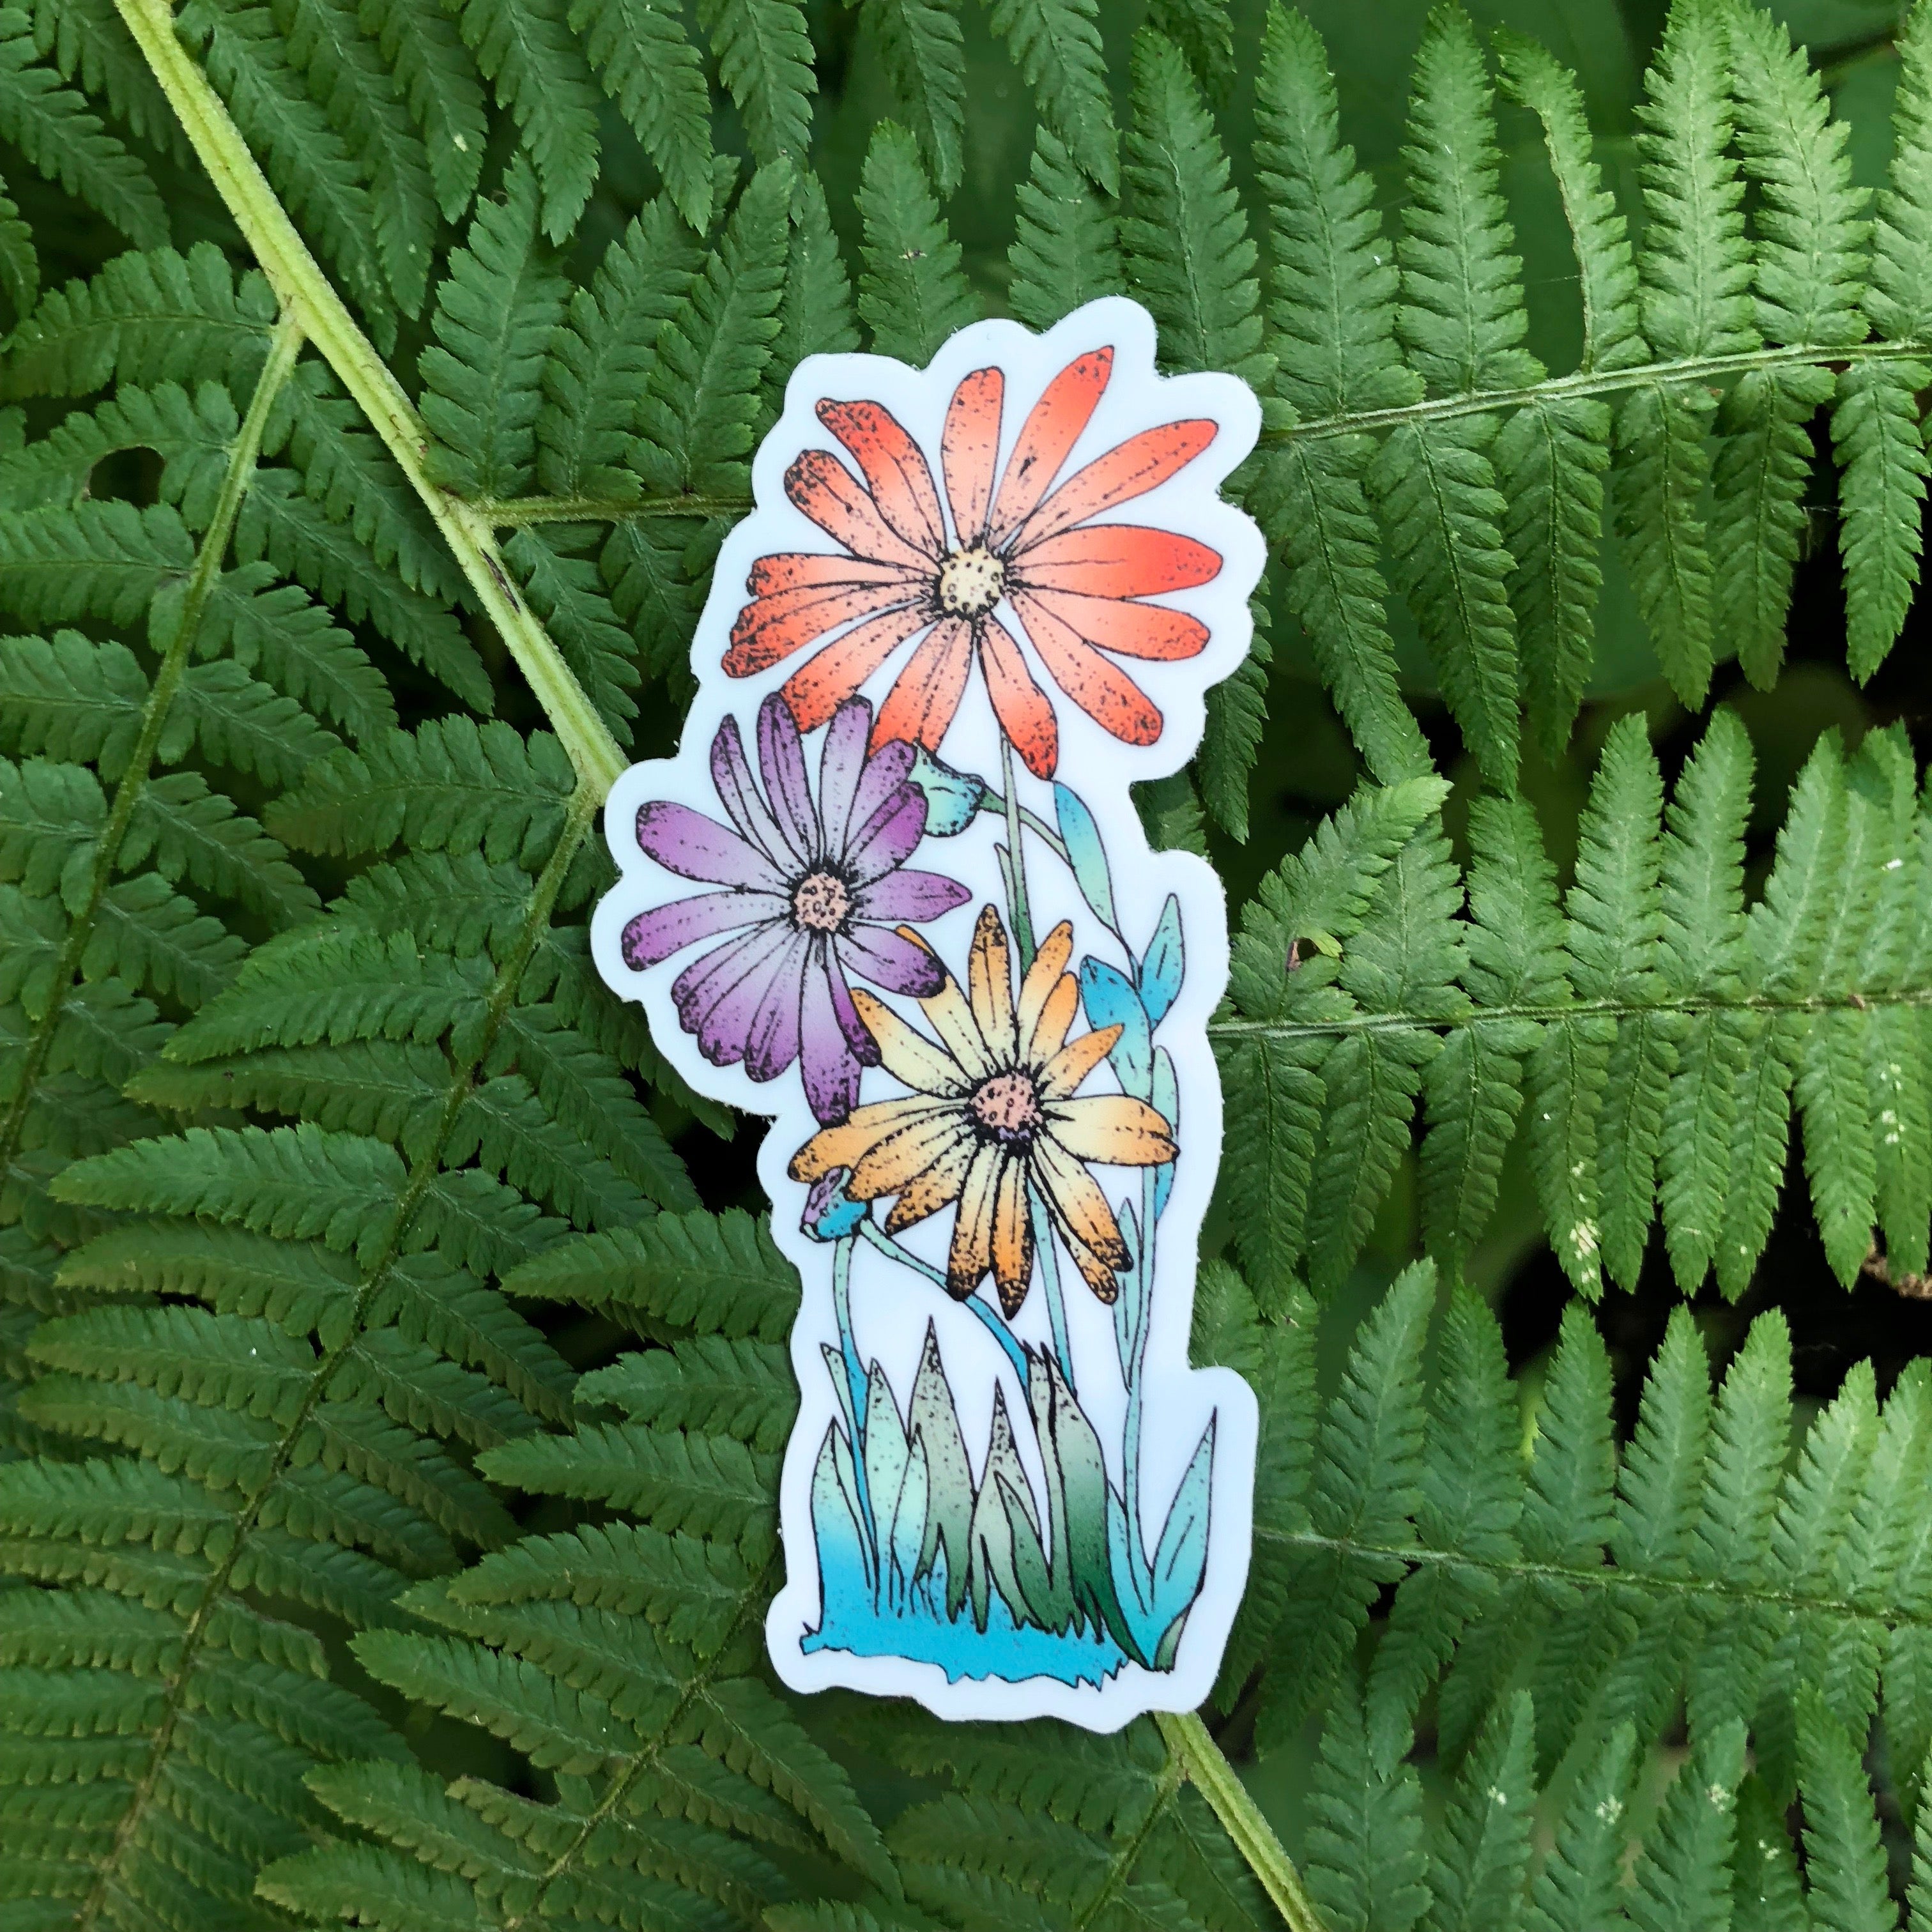 Flower Power Sticker-Vinyl Sticker-Roam Wild Designs